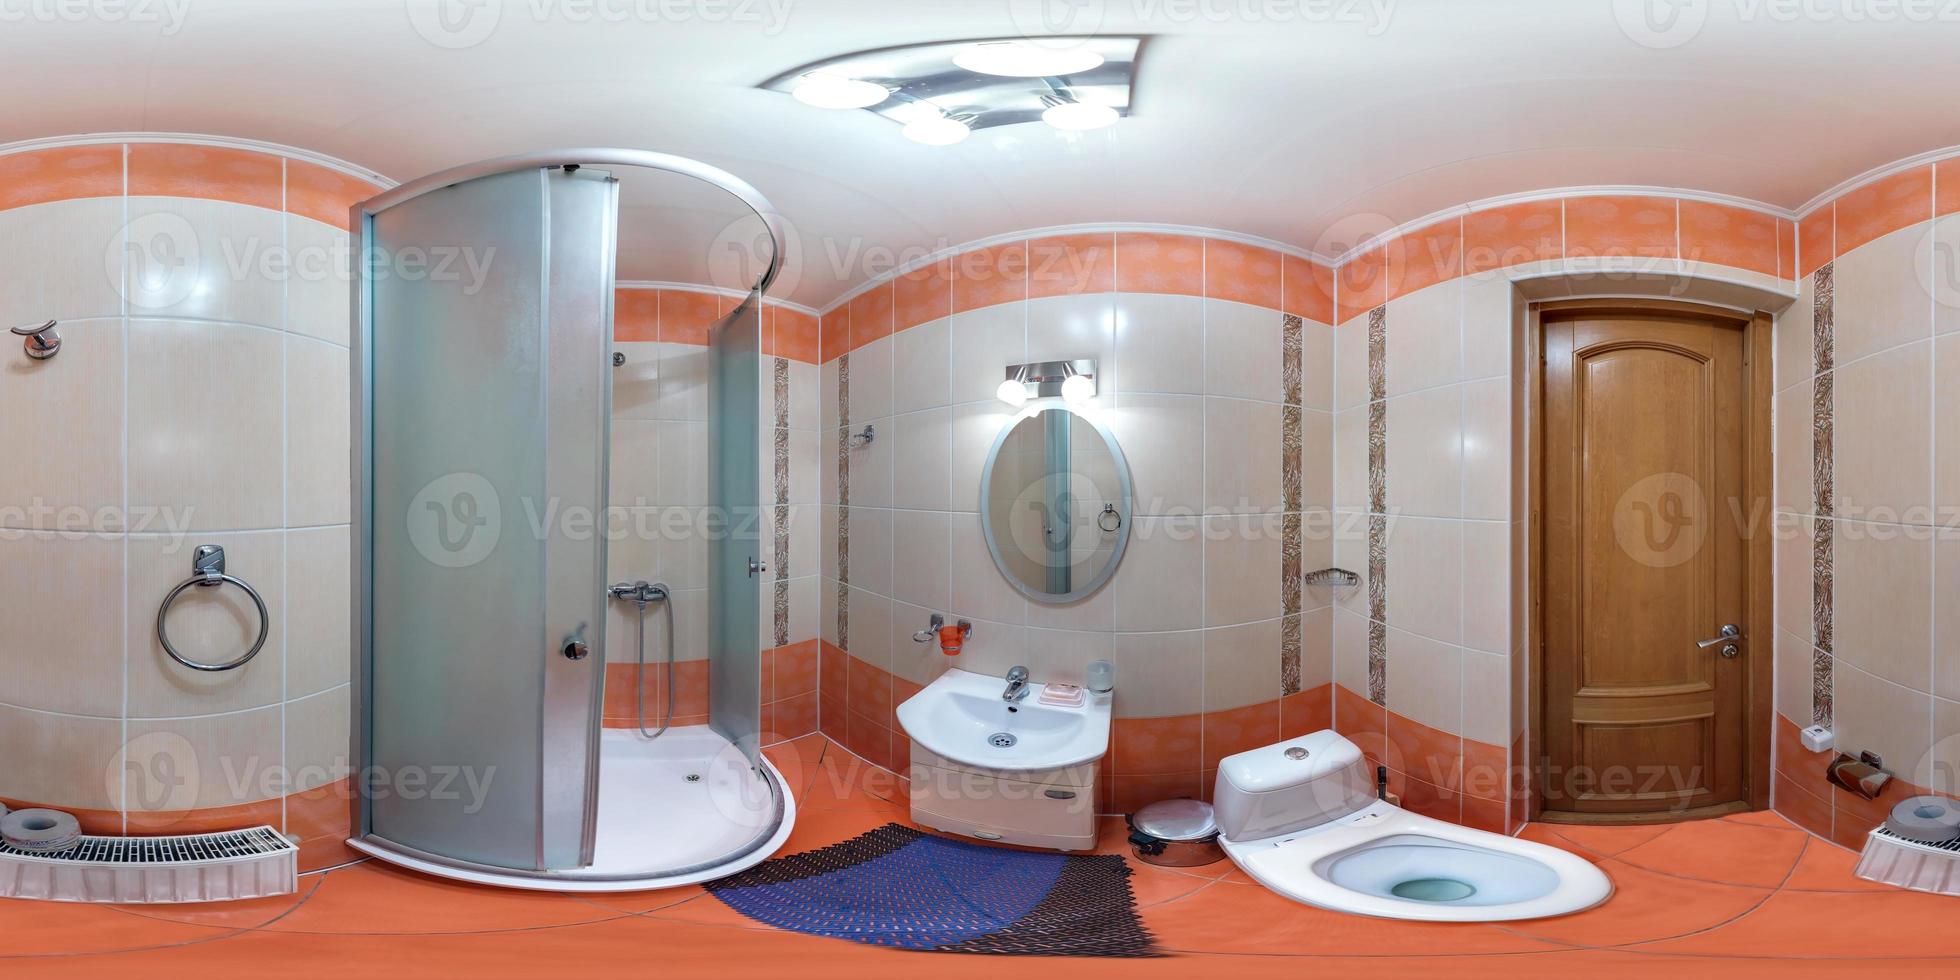 naadloos 360 panorama in interieur van badkamer van goedkoop hotel, vlak of appartementen met toilet, wastafel en douche in equirectangular projectie met zenit en nadir. vr ar inhoud foto